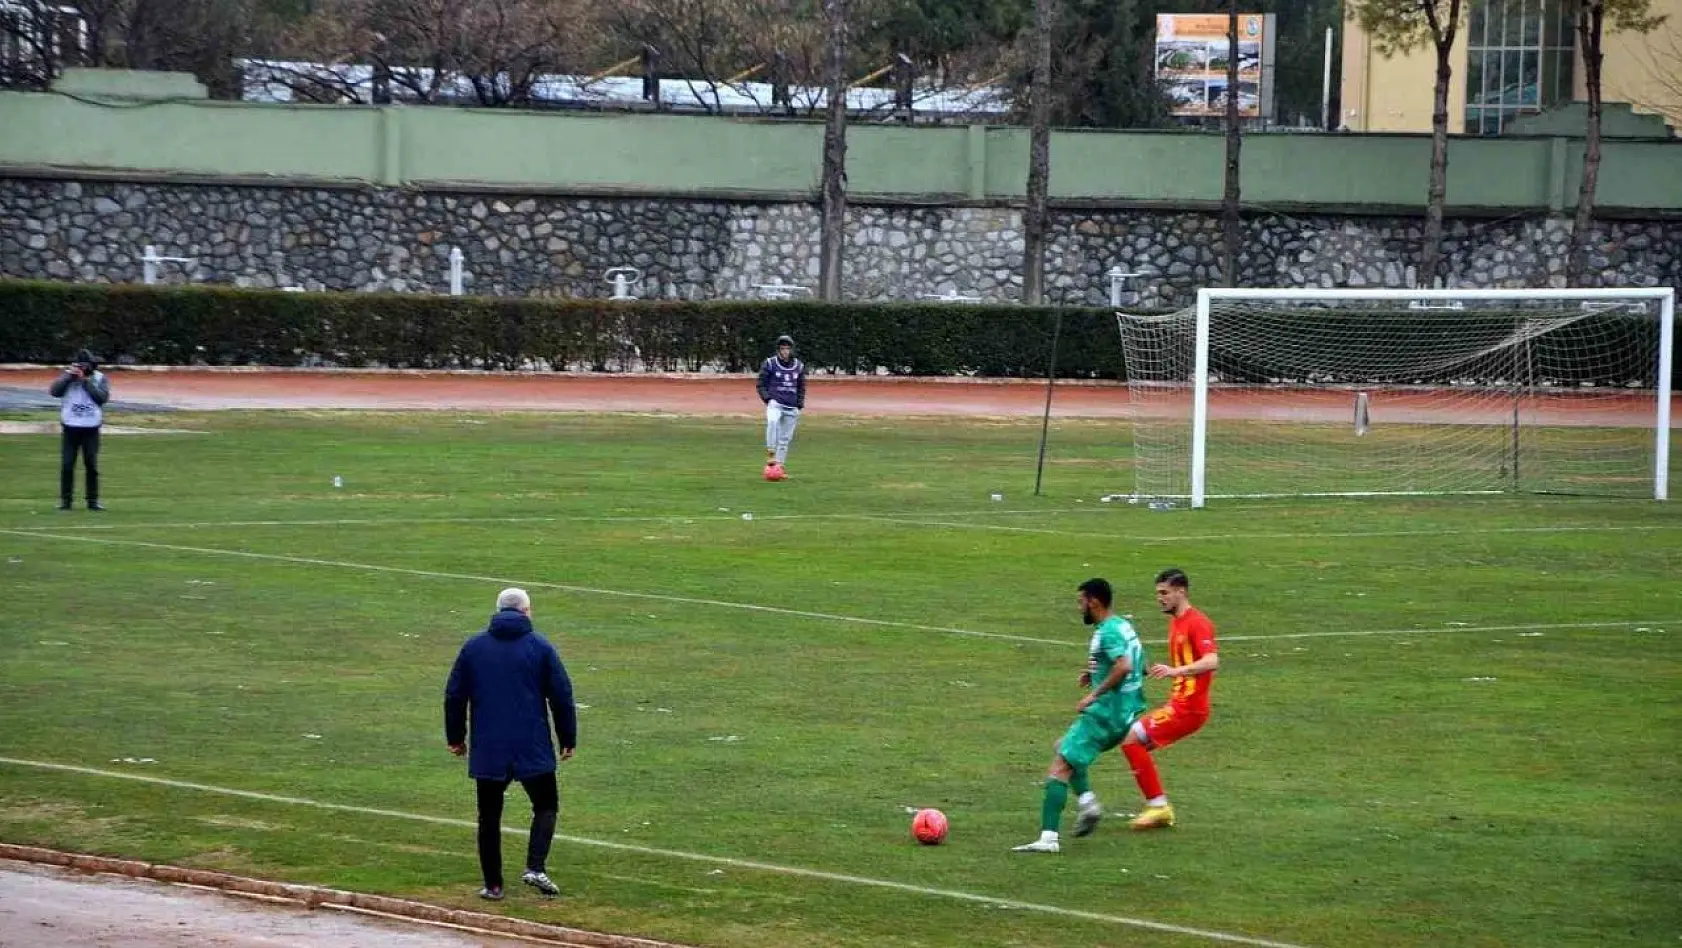 Ermaş Muğlaspor, Tire 2021 Futbol Kulübü'nü kendi evinde mağlup etti